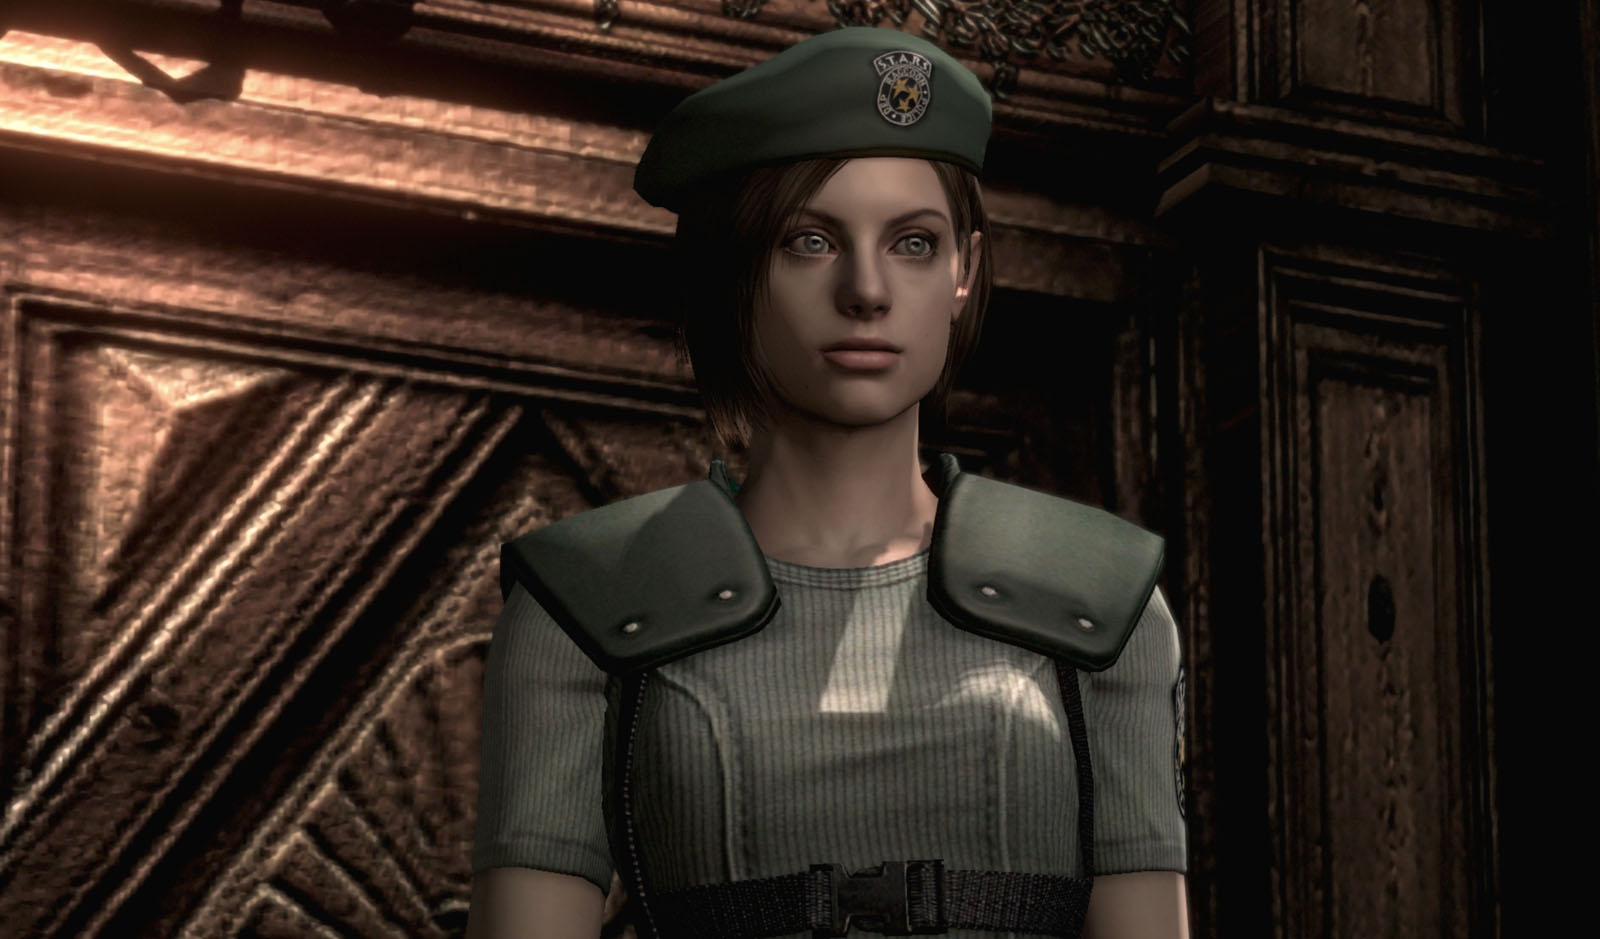 Jill-Valentine-from-Resident-Evil-Game-Art-Gallery.jpg